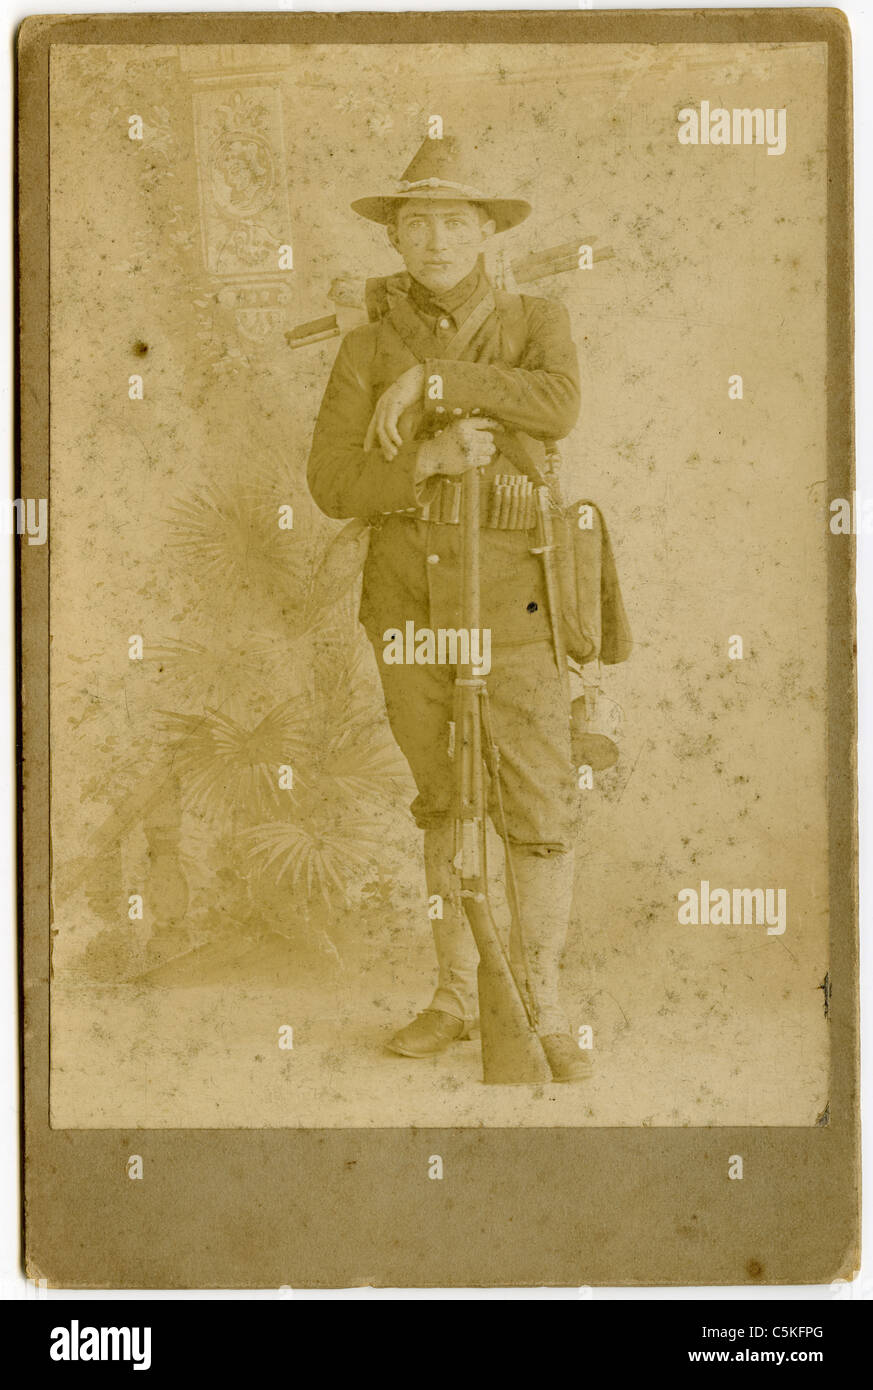 Spanisch-Amerikanischen Krieg Soldaten in Manila, Philippinen-Porträt. einheitliche Pistole Gewehr 45 Kaliber 8. Infanterie Stockfoto